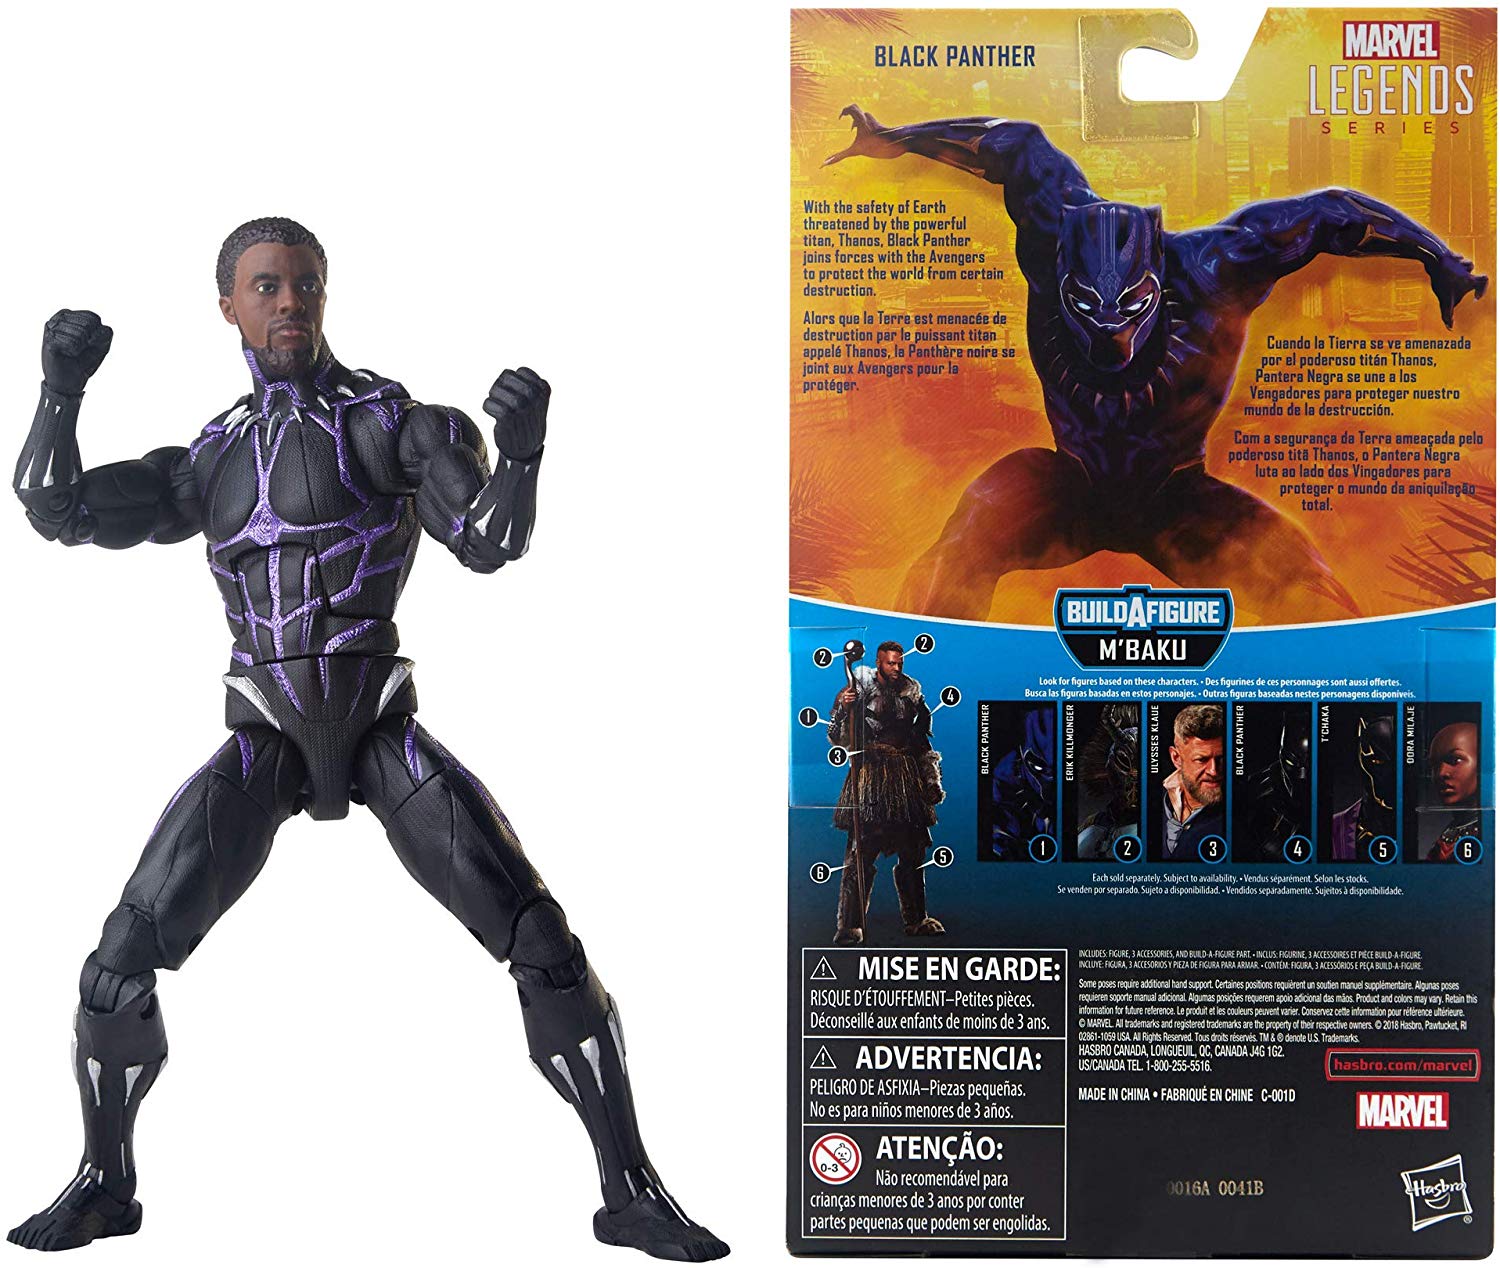 Marvel Legends Black Panther Series Vibranium Black Panther M'Baku BAF Wave Action Figure 2